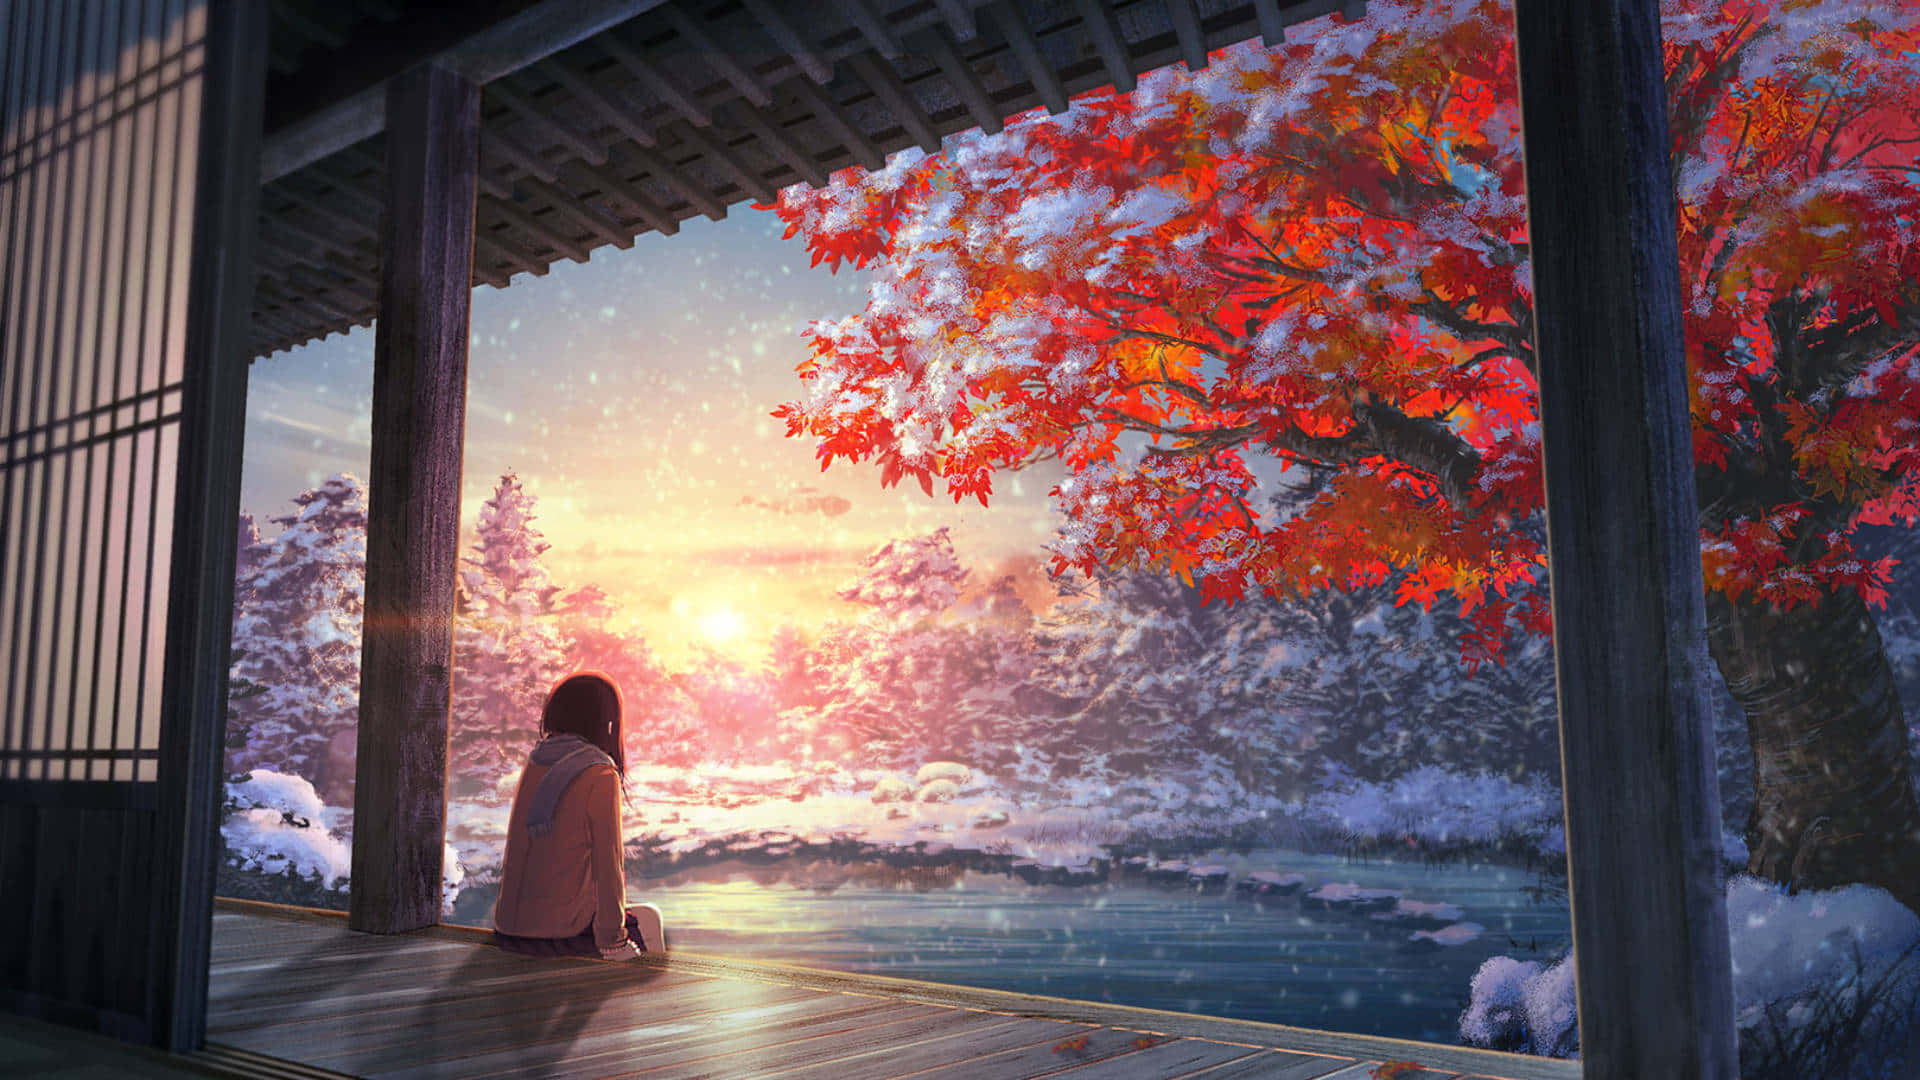 Enkvinna Sitter På En Veranda Och Tittar Ut På Snöfallet Wallpaper